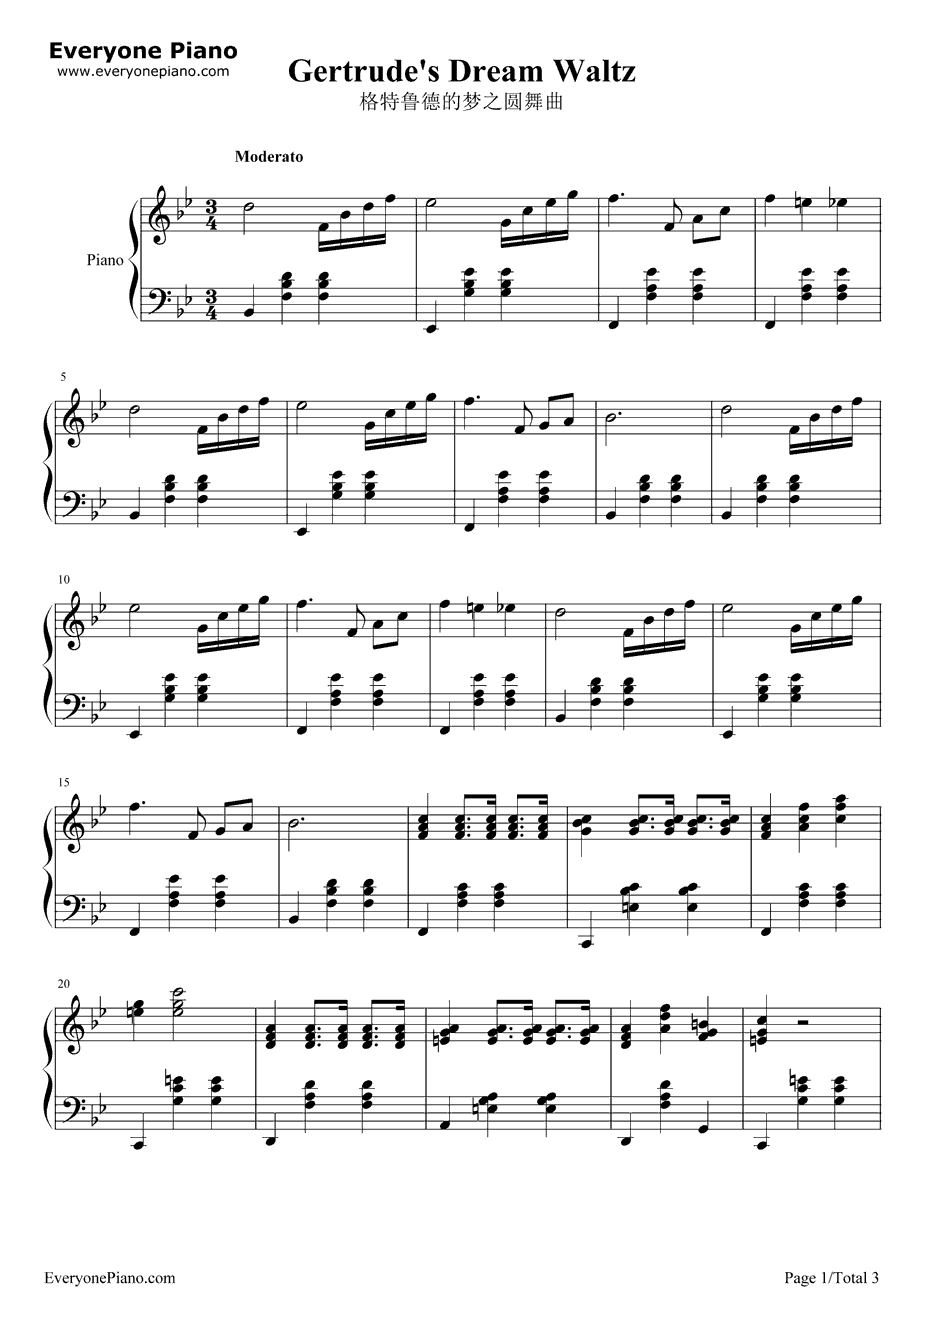 格特鲁德的梦之圆舞曲钢琴谱-贝多芬1